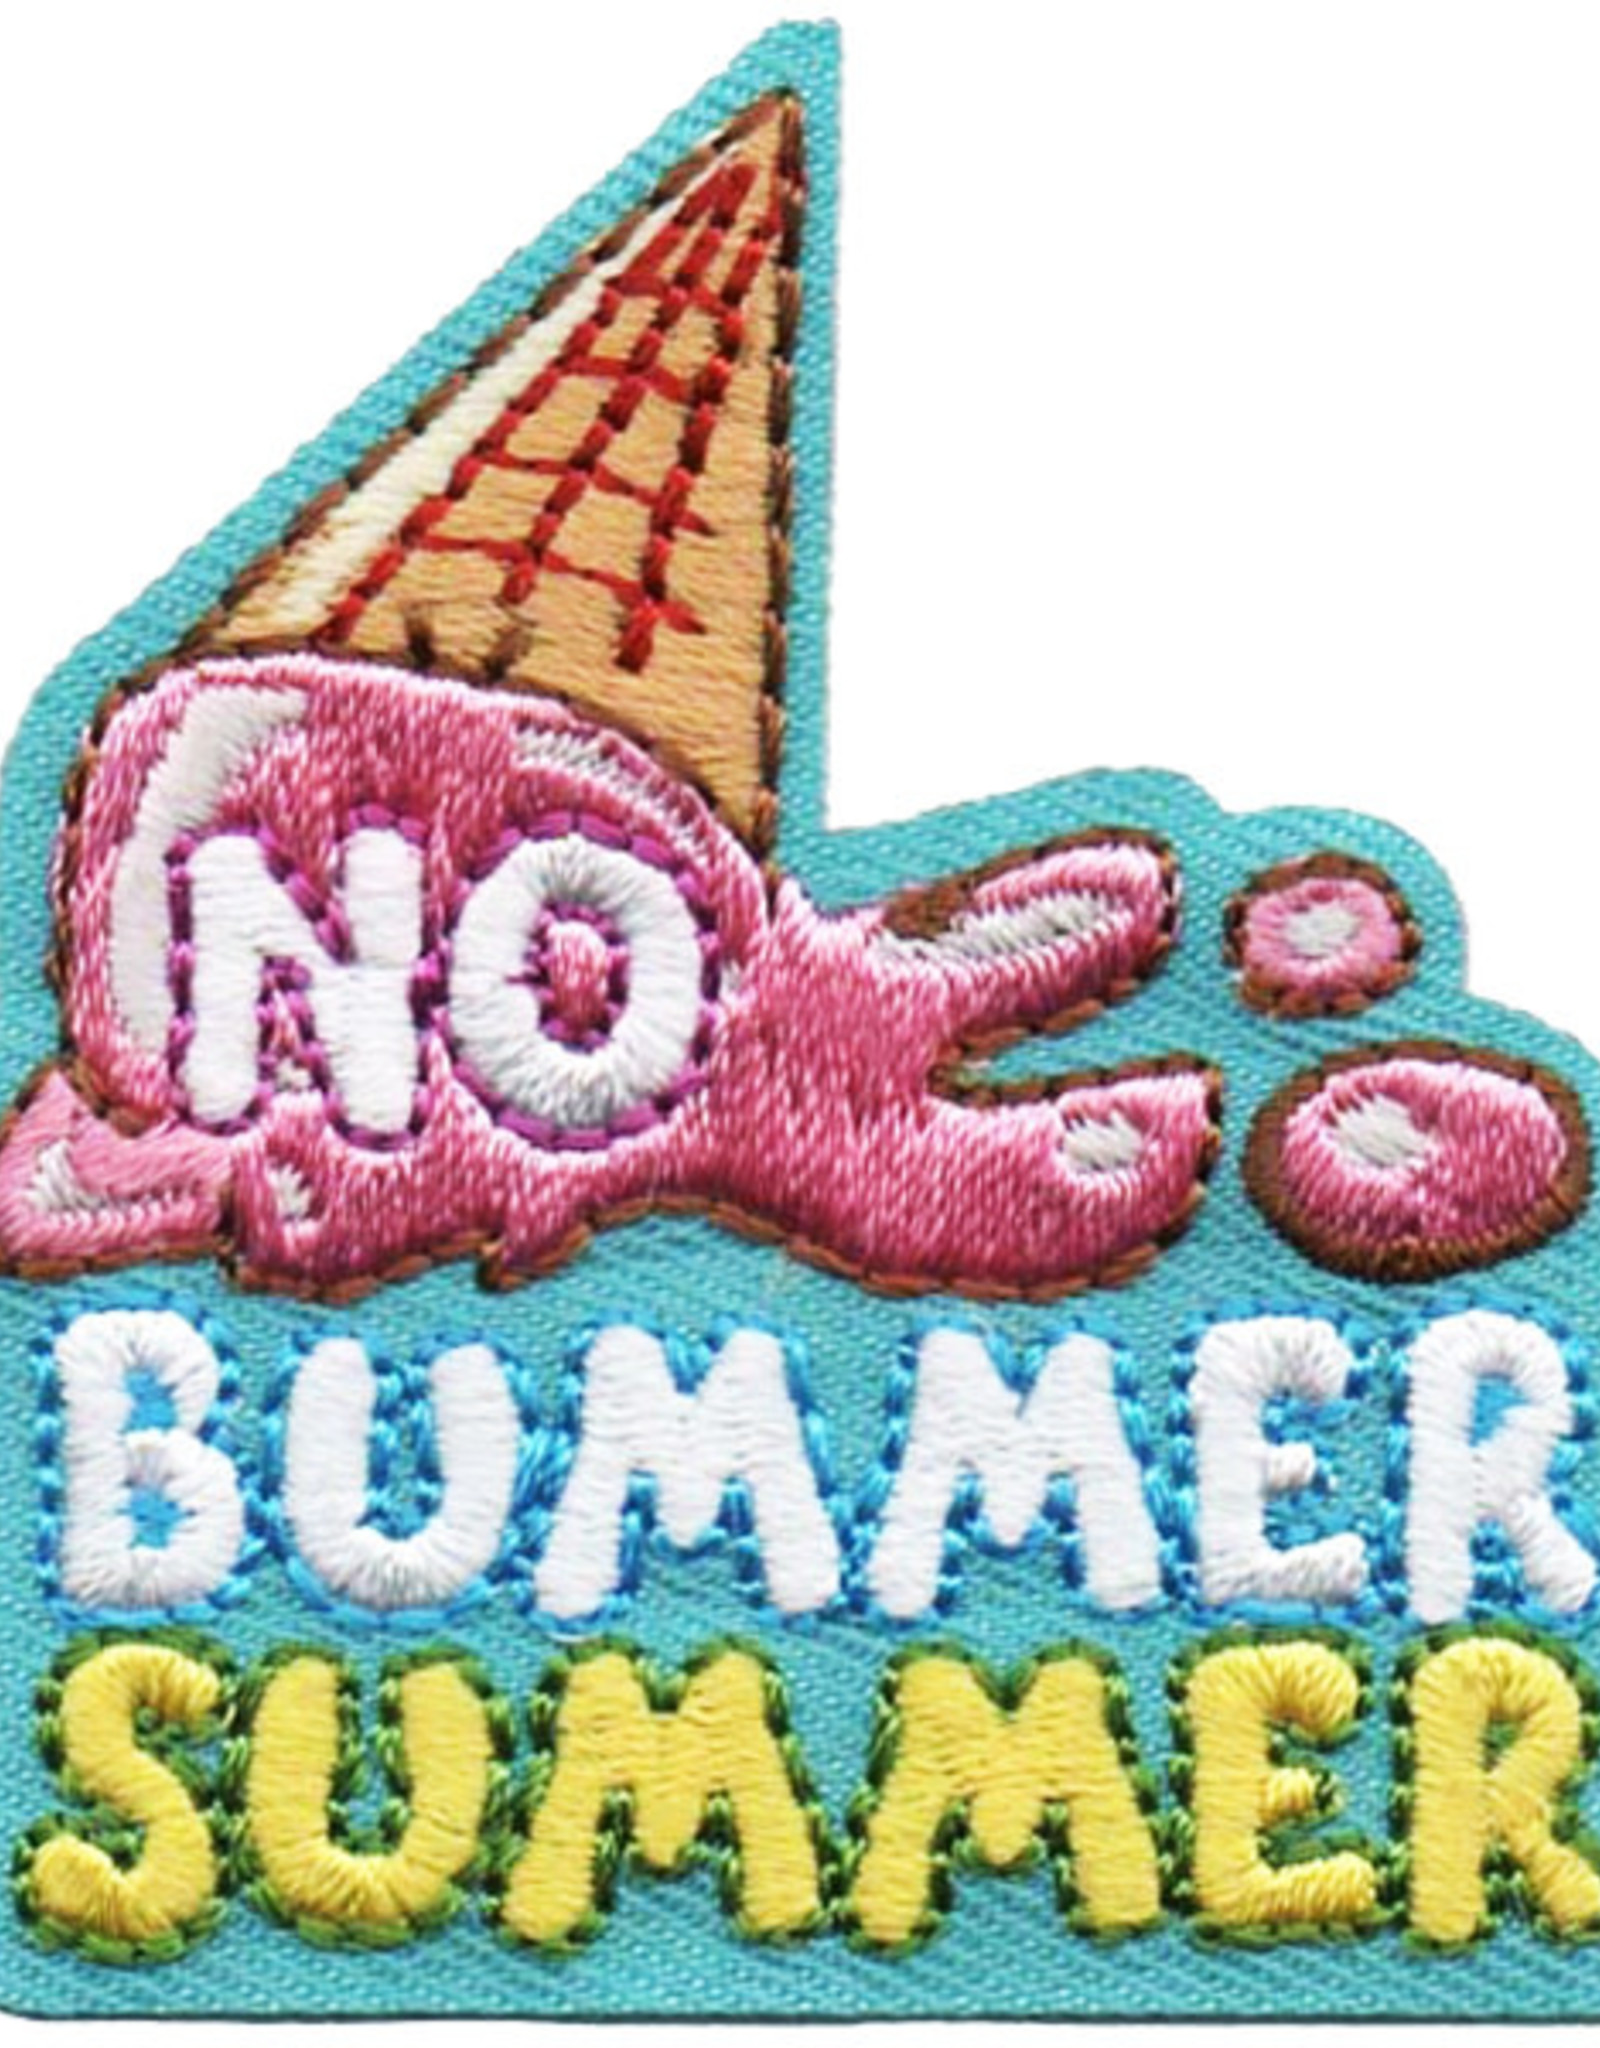 *No Bummer Summer Fun Patch